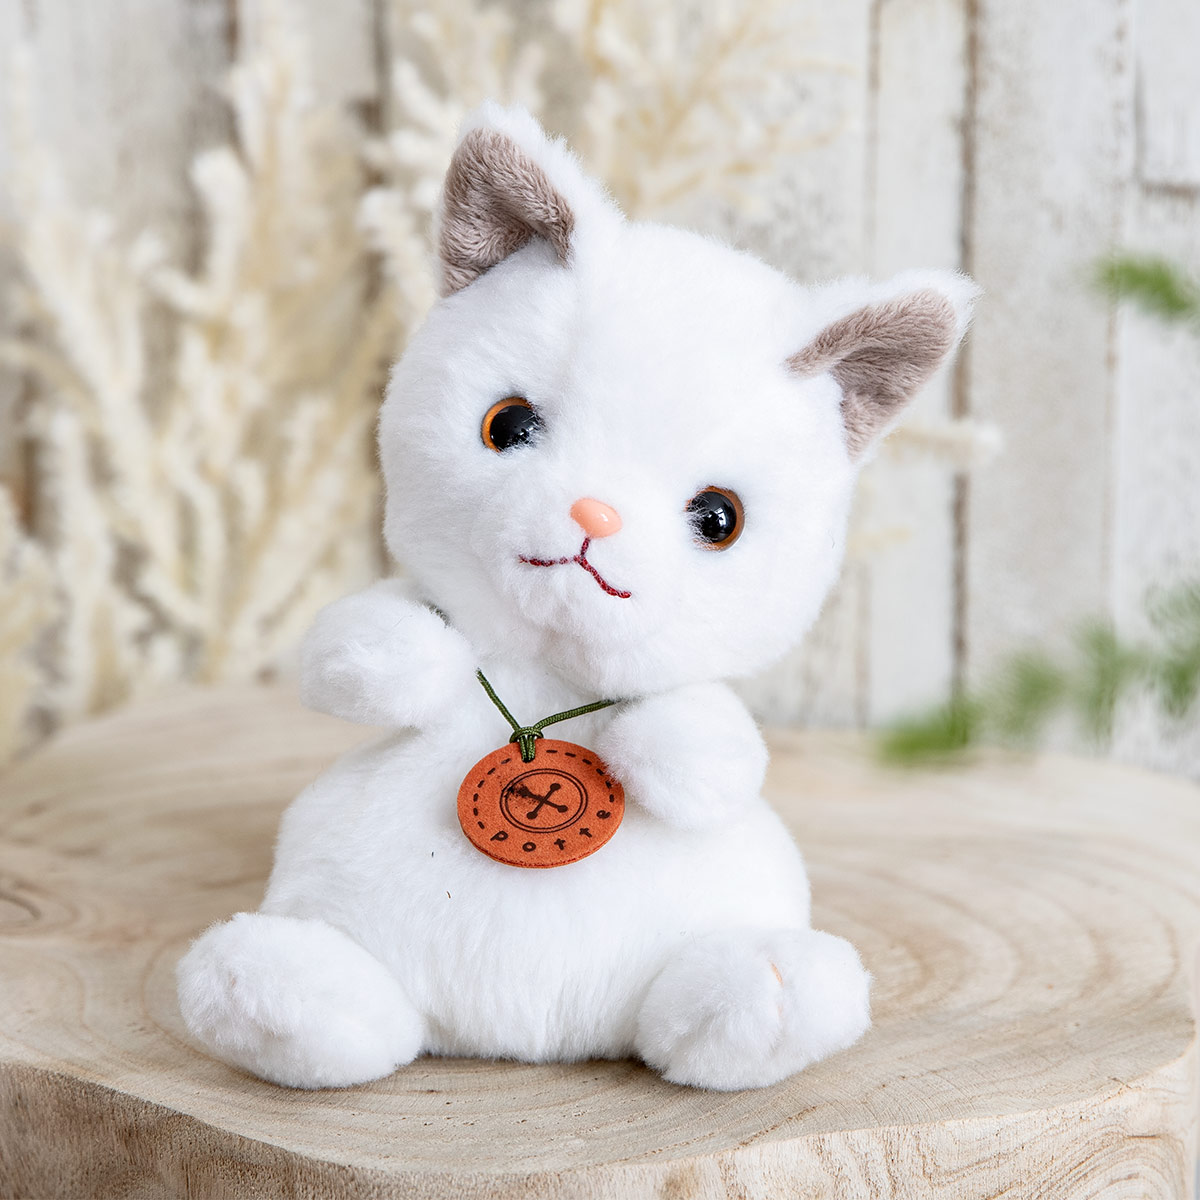 ぬいぐるみ potte 白猫 猫 （ ヌイグルミ ねこ ネコ 動物 雑貨 インテリア アニマル グッズ ベビー 赤ちゃん プレゼント ギフト かわいい